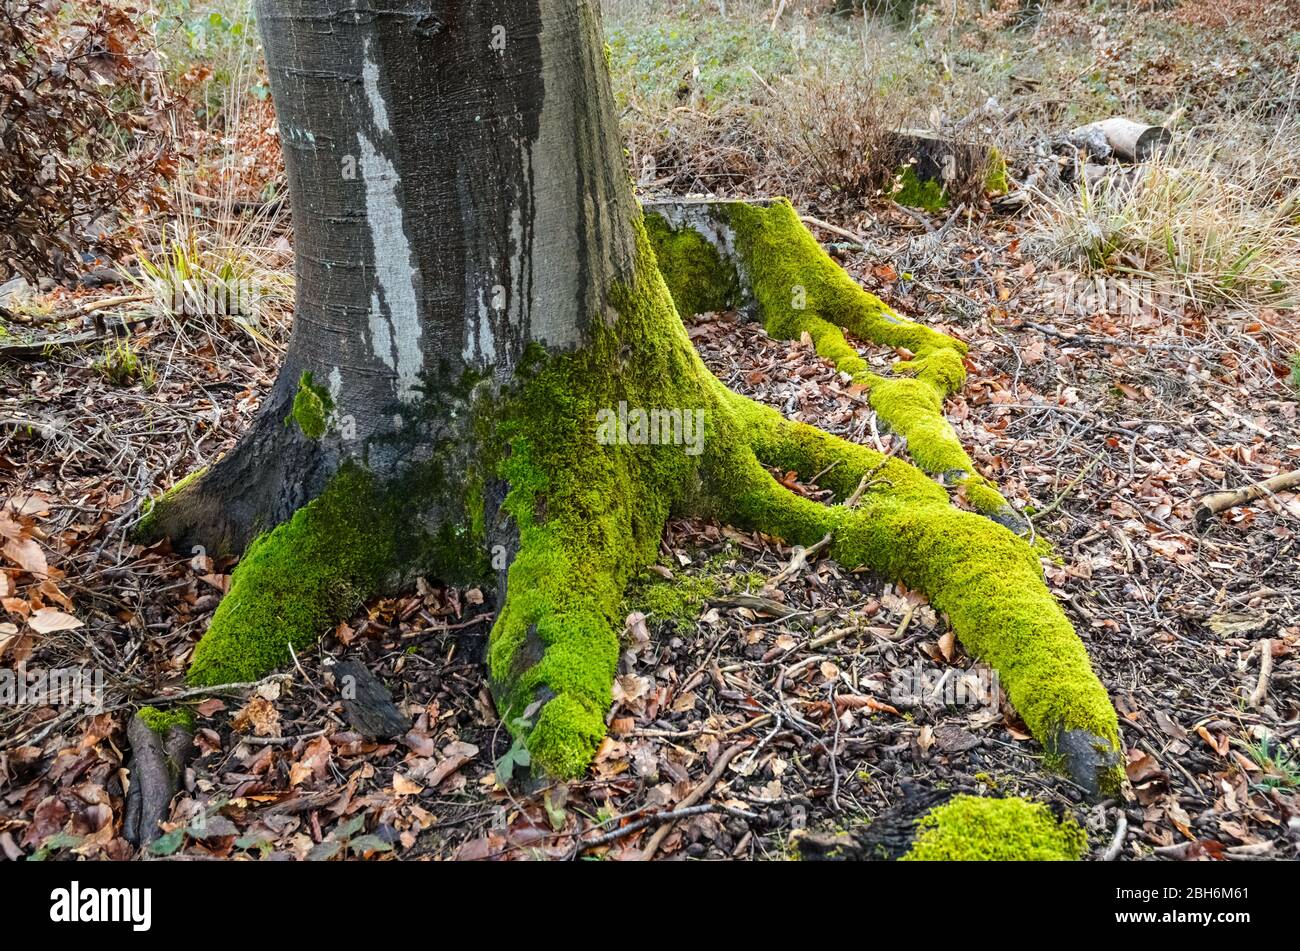 Piante di muschio, Bryophita, su un tronco di albero nella foresta in Renania-Palatinato, Germania, Europa occidentale Foto Stock